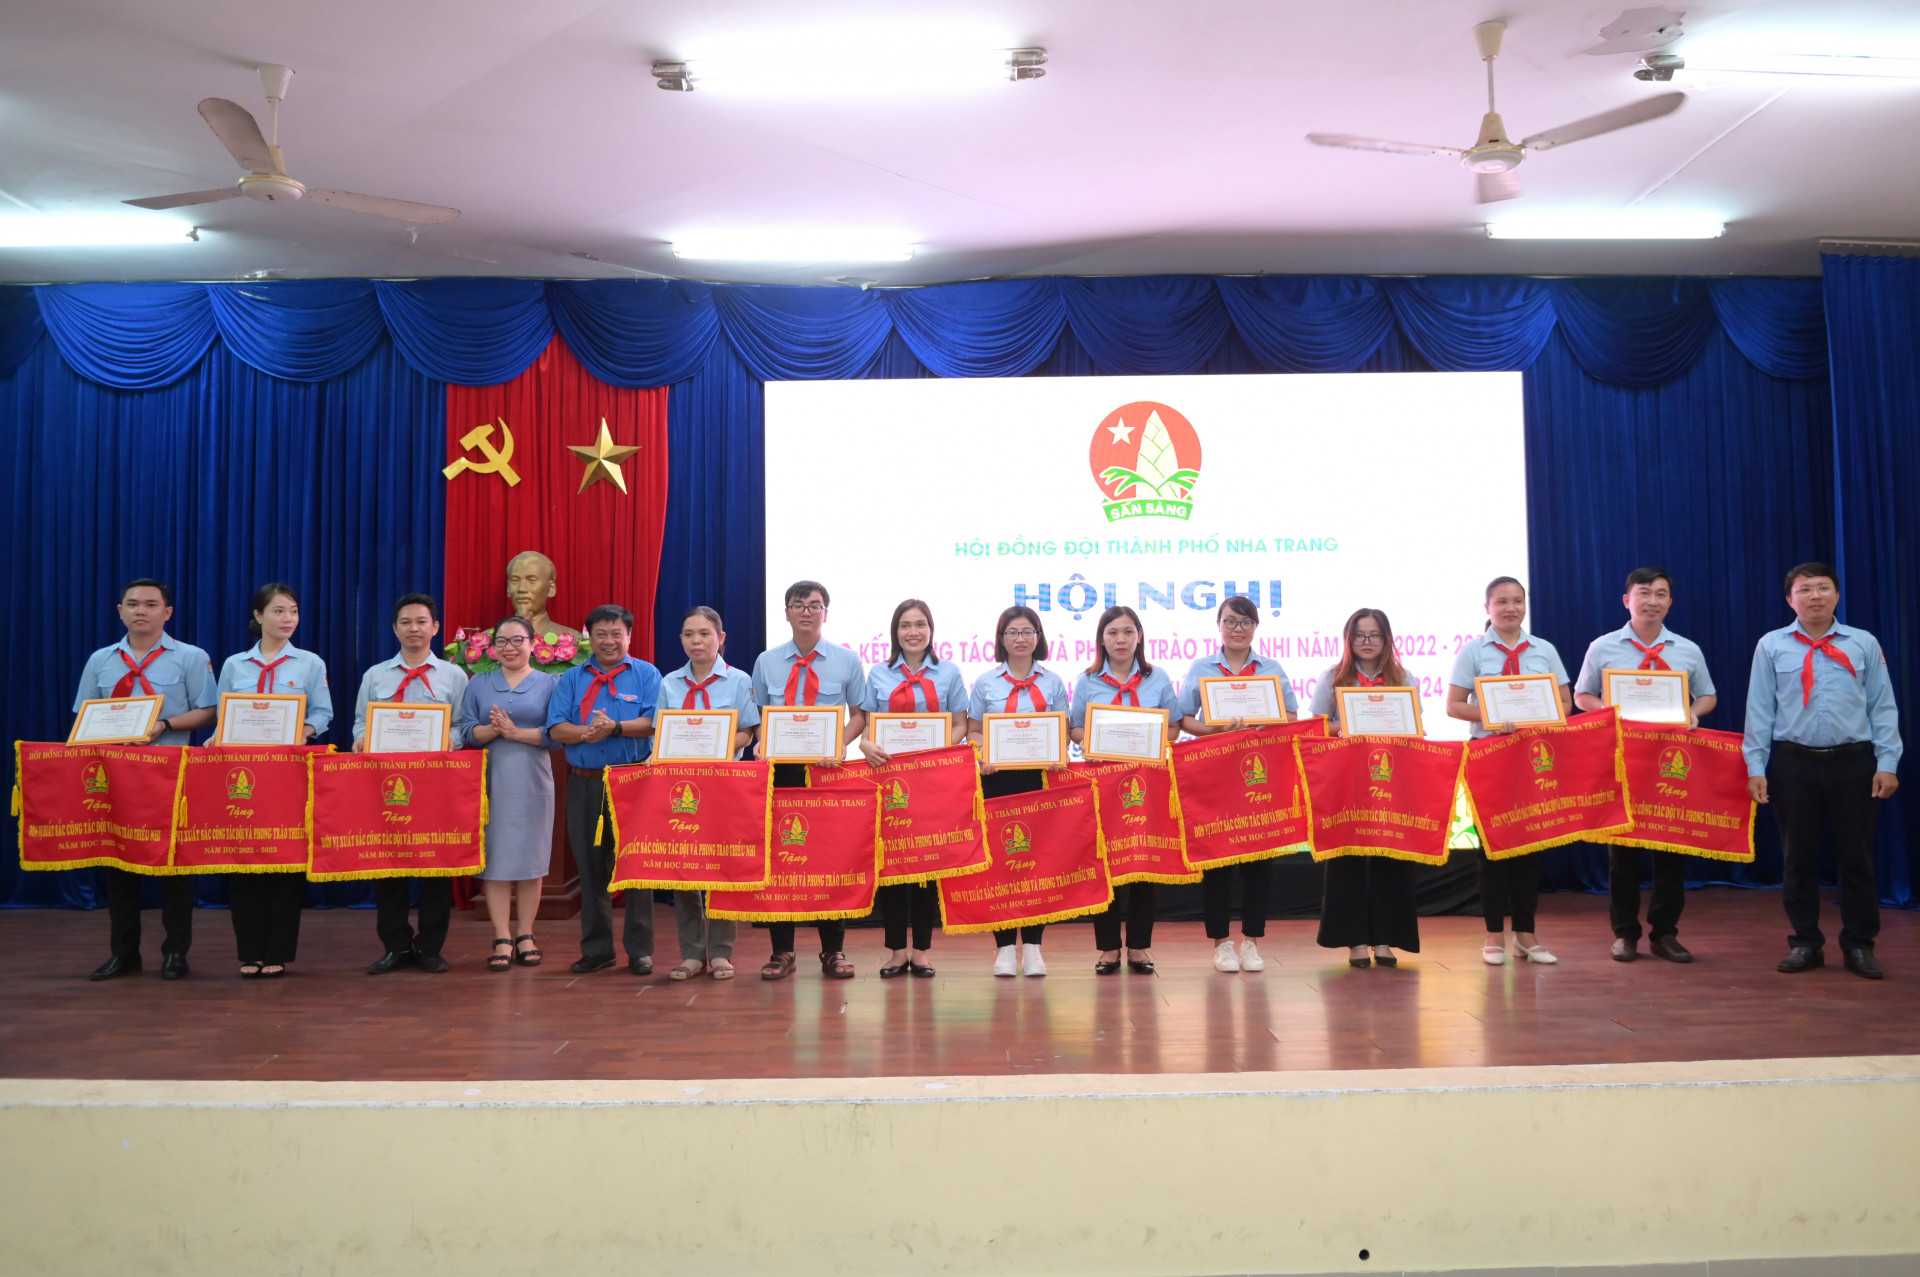 Các đại biểu trao cờ thi đua cho 13 liên đội đạt thành tích xuất sắc trong công tác đội.